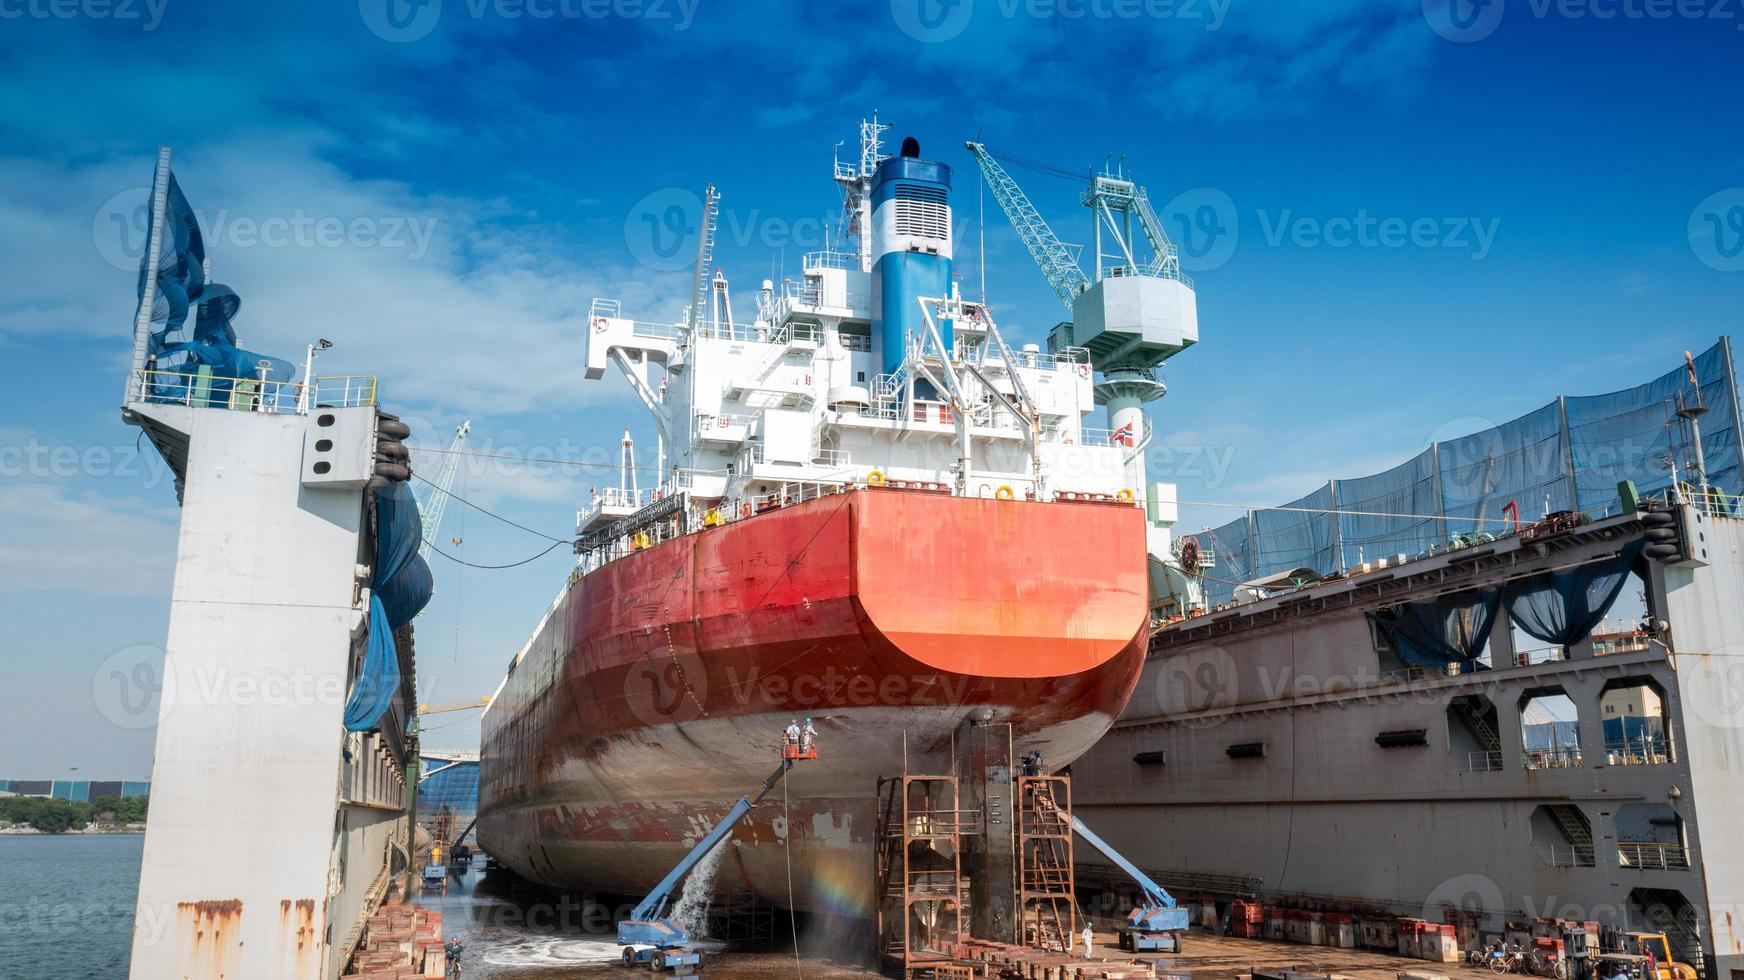 het casco schilderen bestaat uit wassen, stralen en schilderen van het schip vrachtschip door exploitant bij internationaal droogdok concept onderhoudsservice jaarlijkse schoonmaak. foto